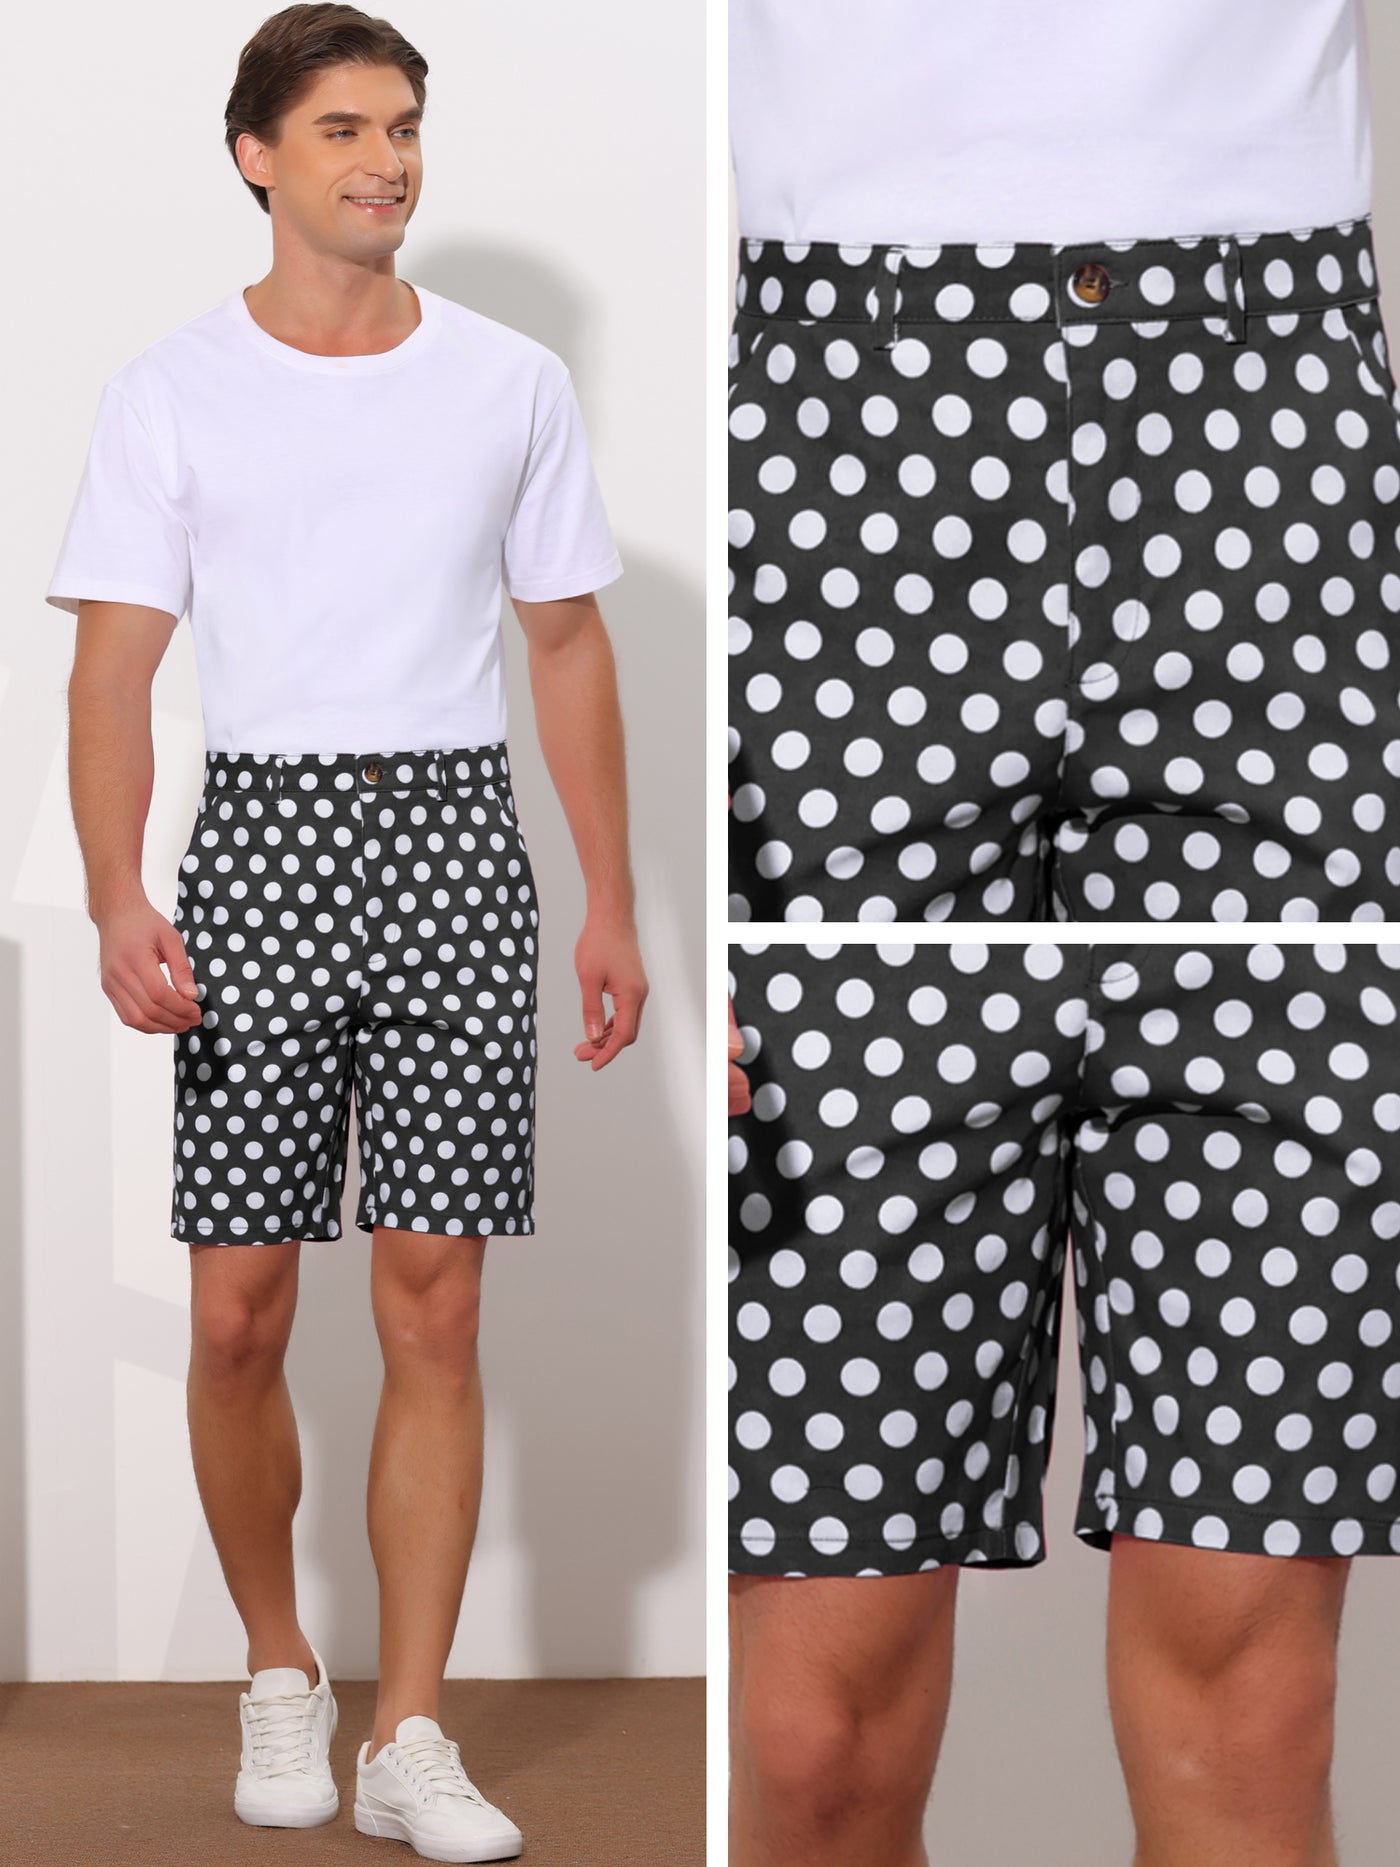 Bublédon Polka Dots Summer Comfort Flat Front Patterned Chino Shorts